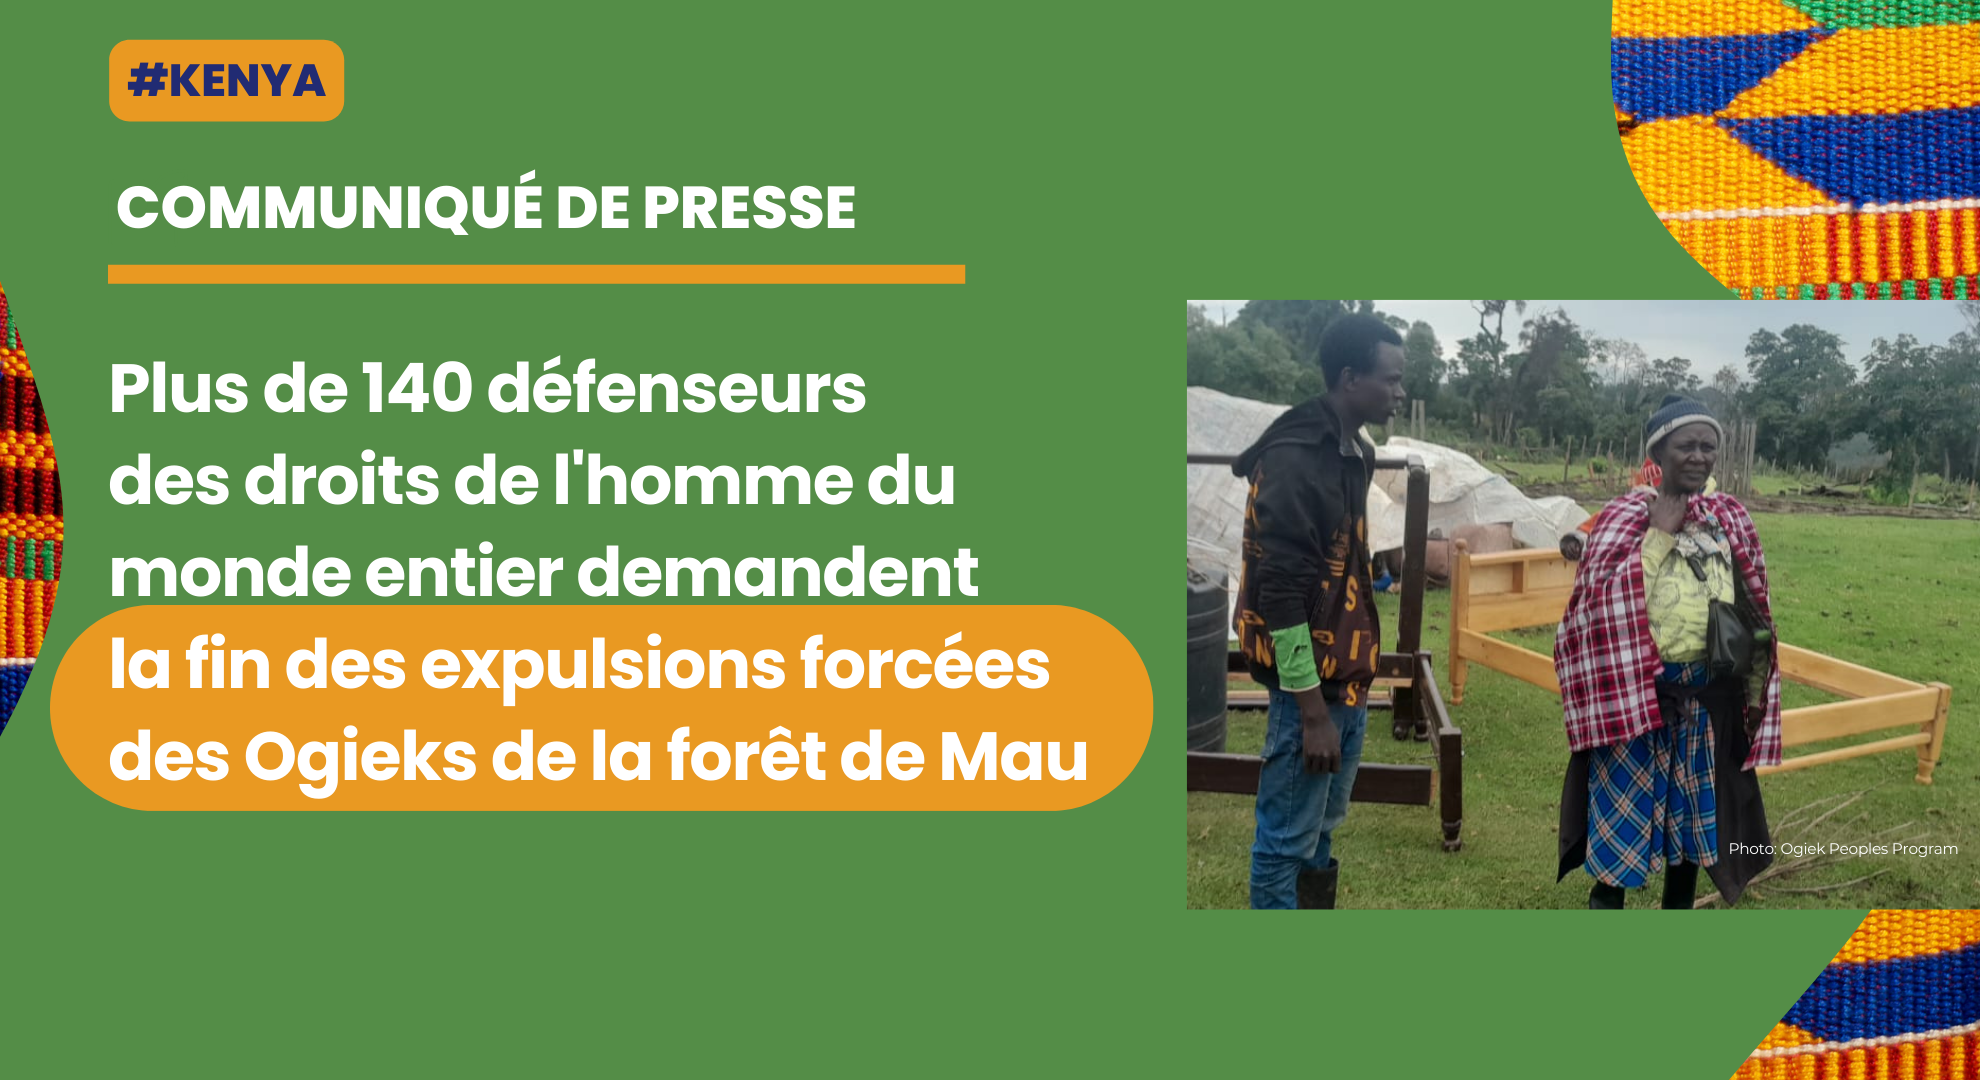 Plus de 140 défenseurs des droits de l'homme du monde entier demandent la fin des expulsions forcées des Ogieks de la forêt de Mau